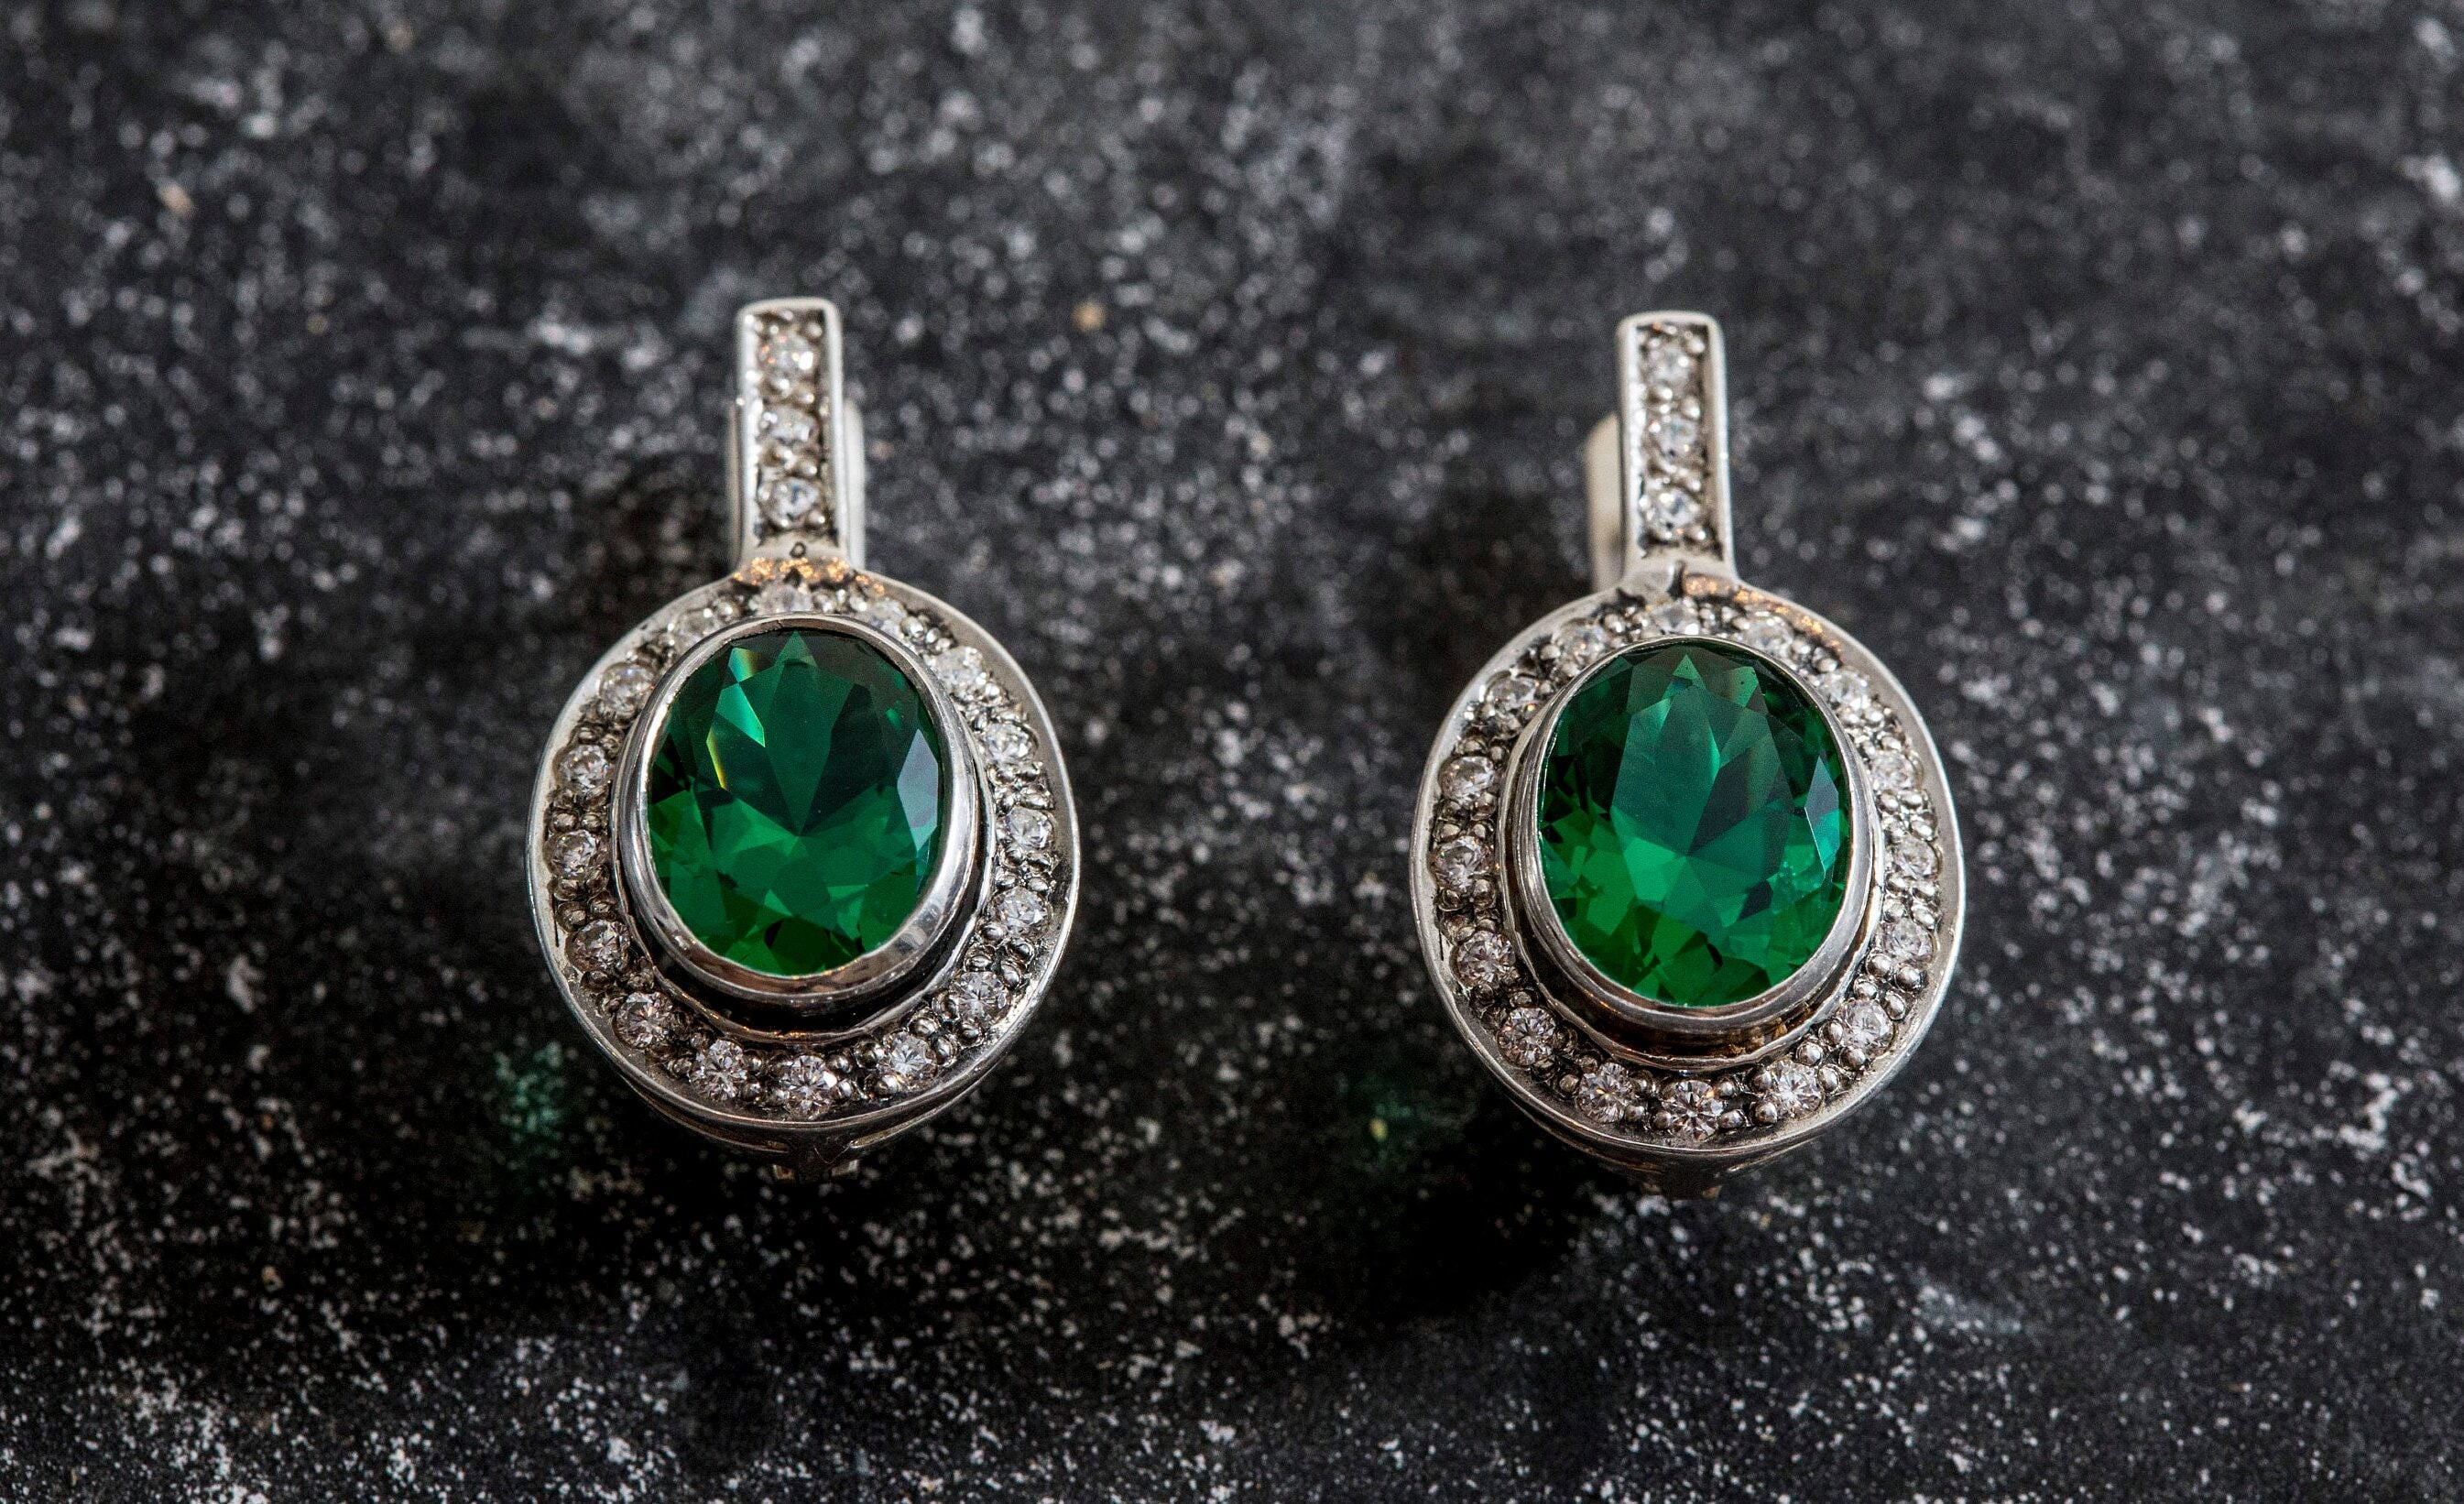 Vintage Emerald Earrings - Green Drop Earrings - Antique Oval Earrings